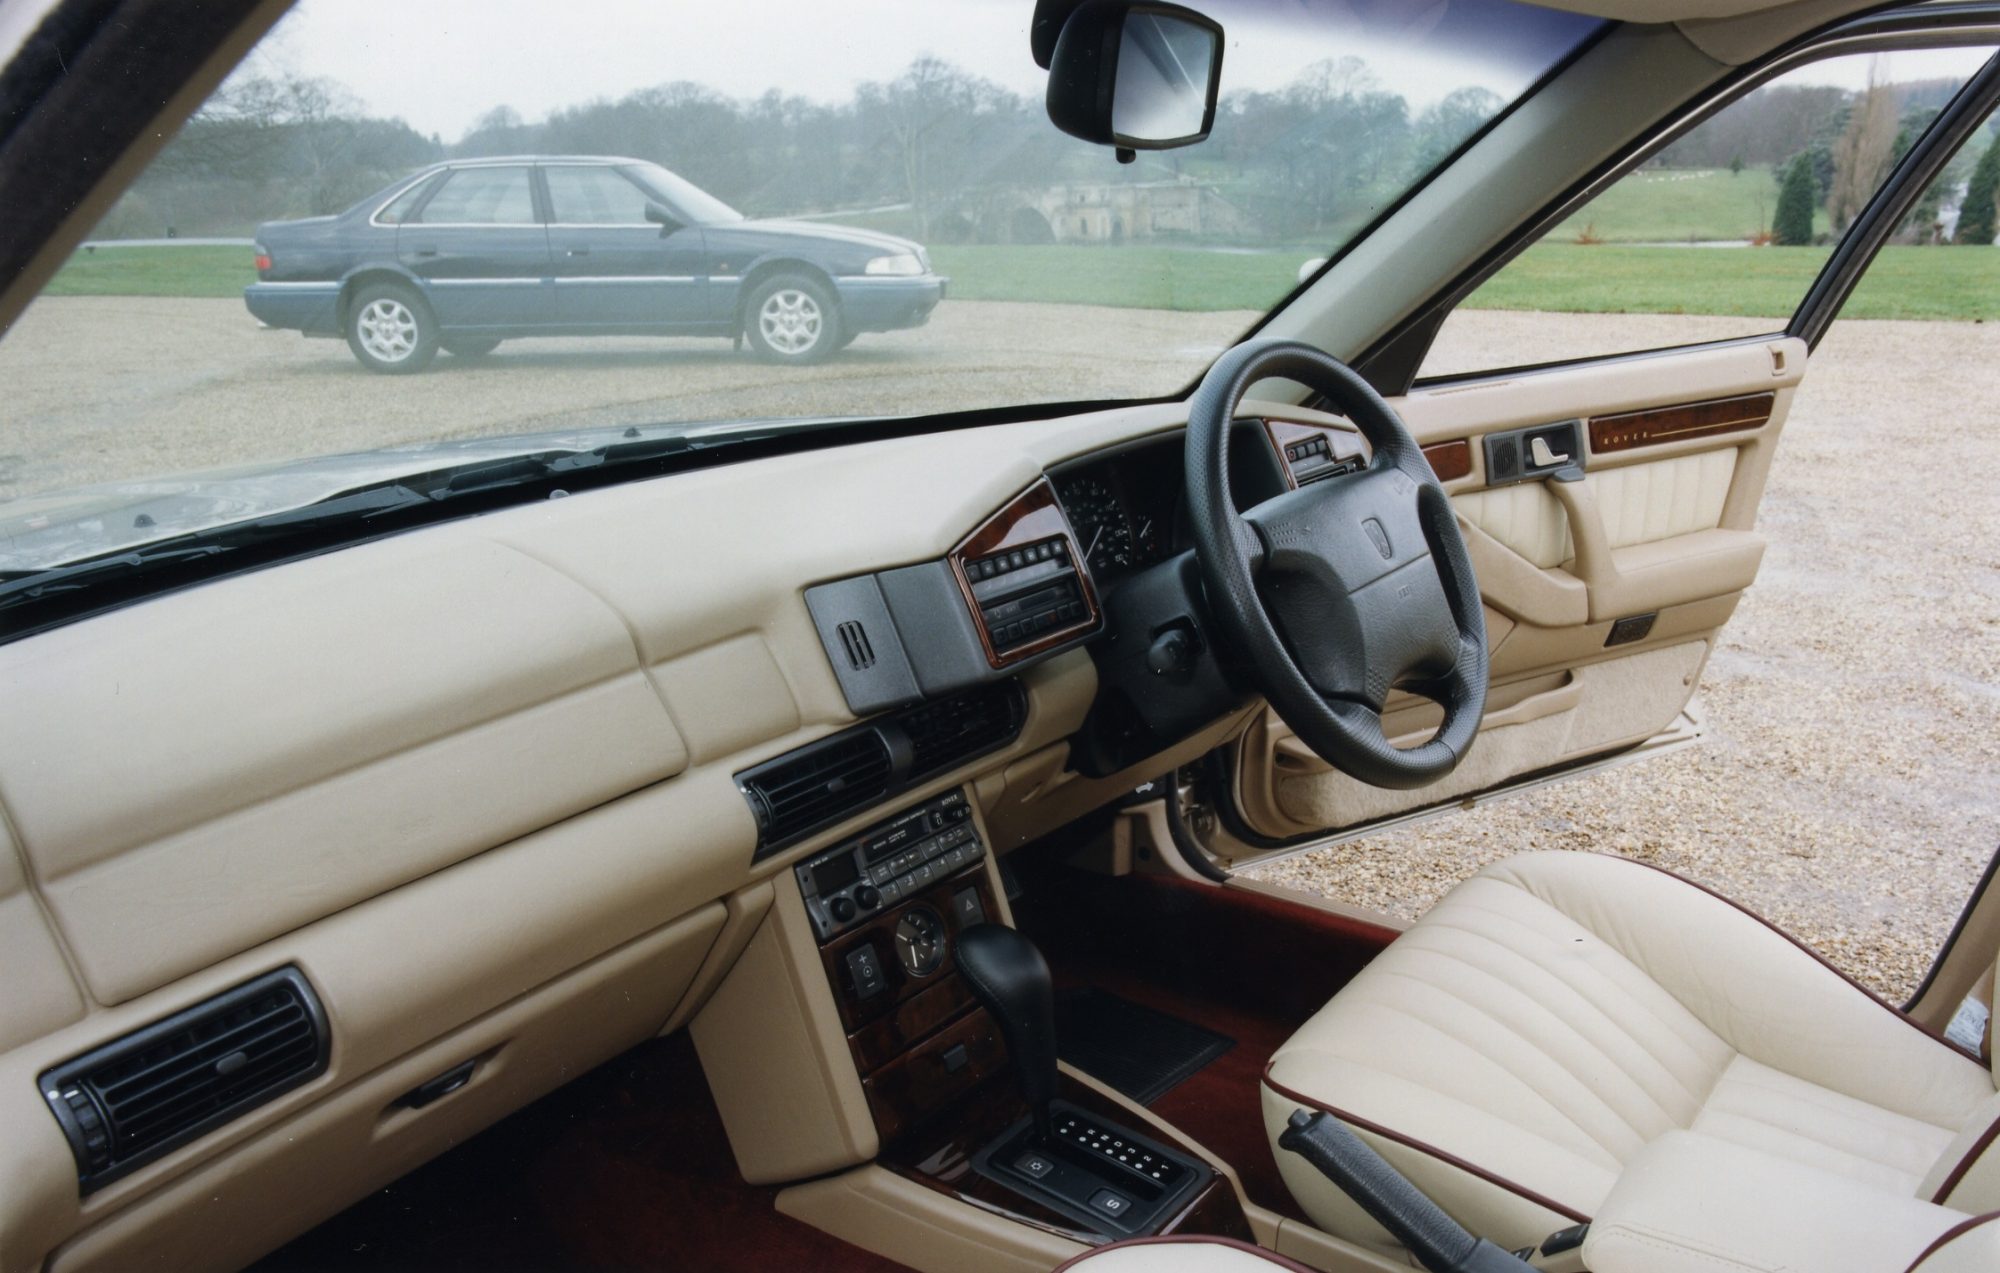 Rover, Rover 800, 800, 820, 827, Honda, Honda Legend, Rover 800 interior